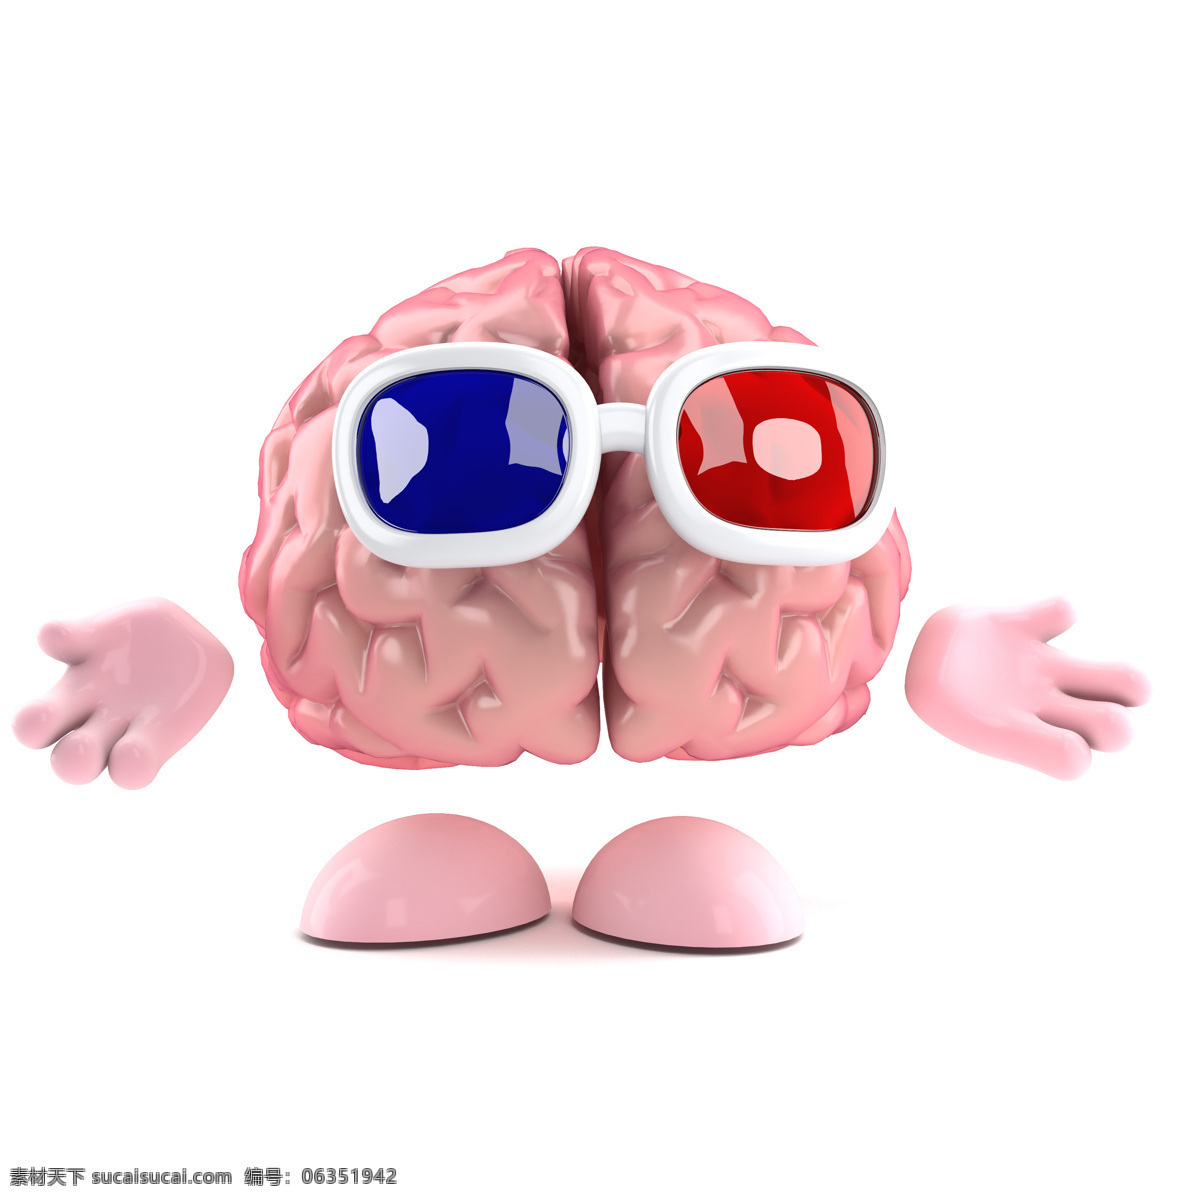 大脑 漫画 3d电影 3d眼镜 人类大脑 大脑漫画 大脑设计 卡通大脑 大脑人物 虚拟人物 儿童卡通 卡通动画 脑细胞 脑容量 太阳镜 动漫动画